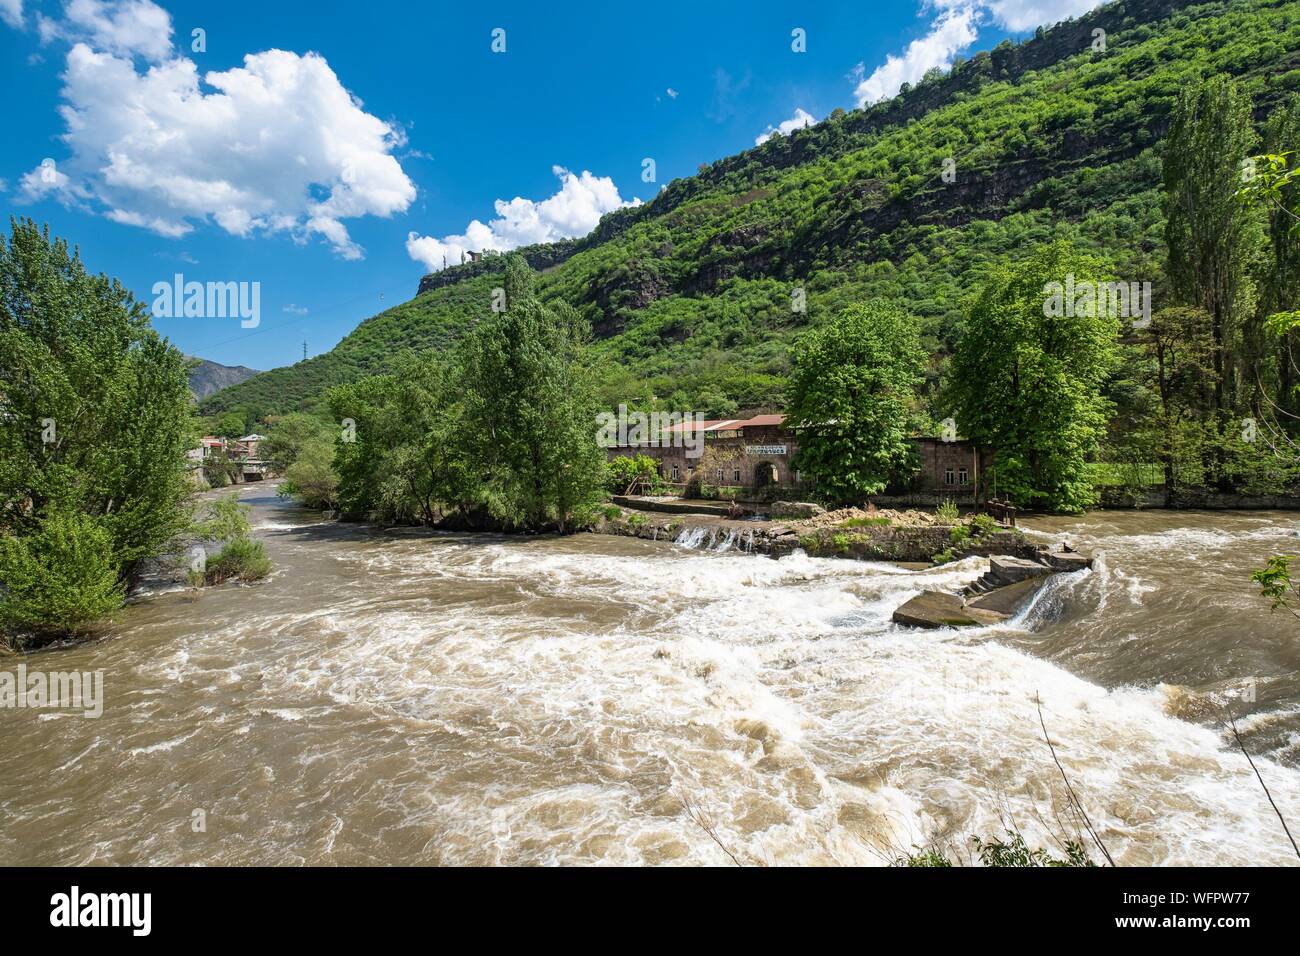 Armenia, Lorri region, Debed valley, Alaverdi, Debed river Stock Photo